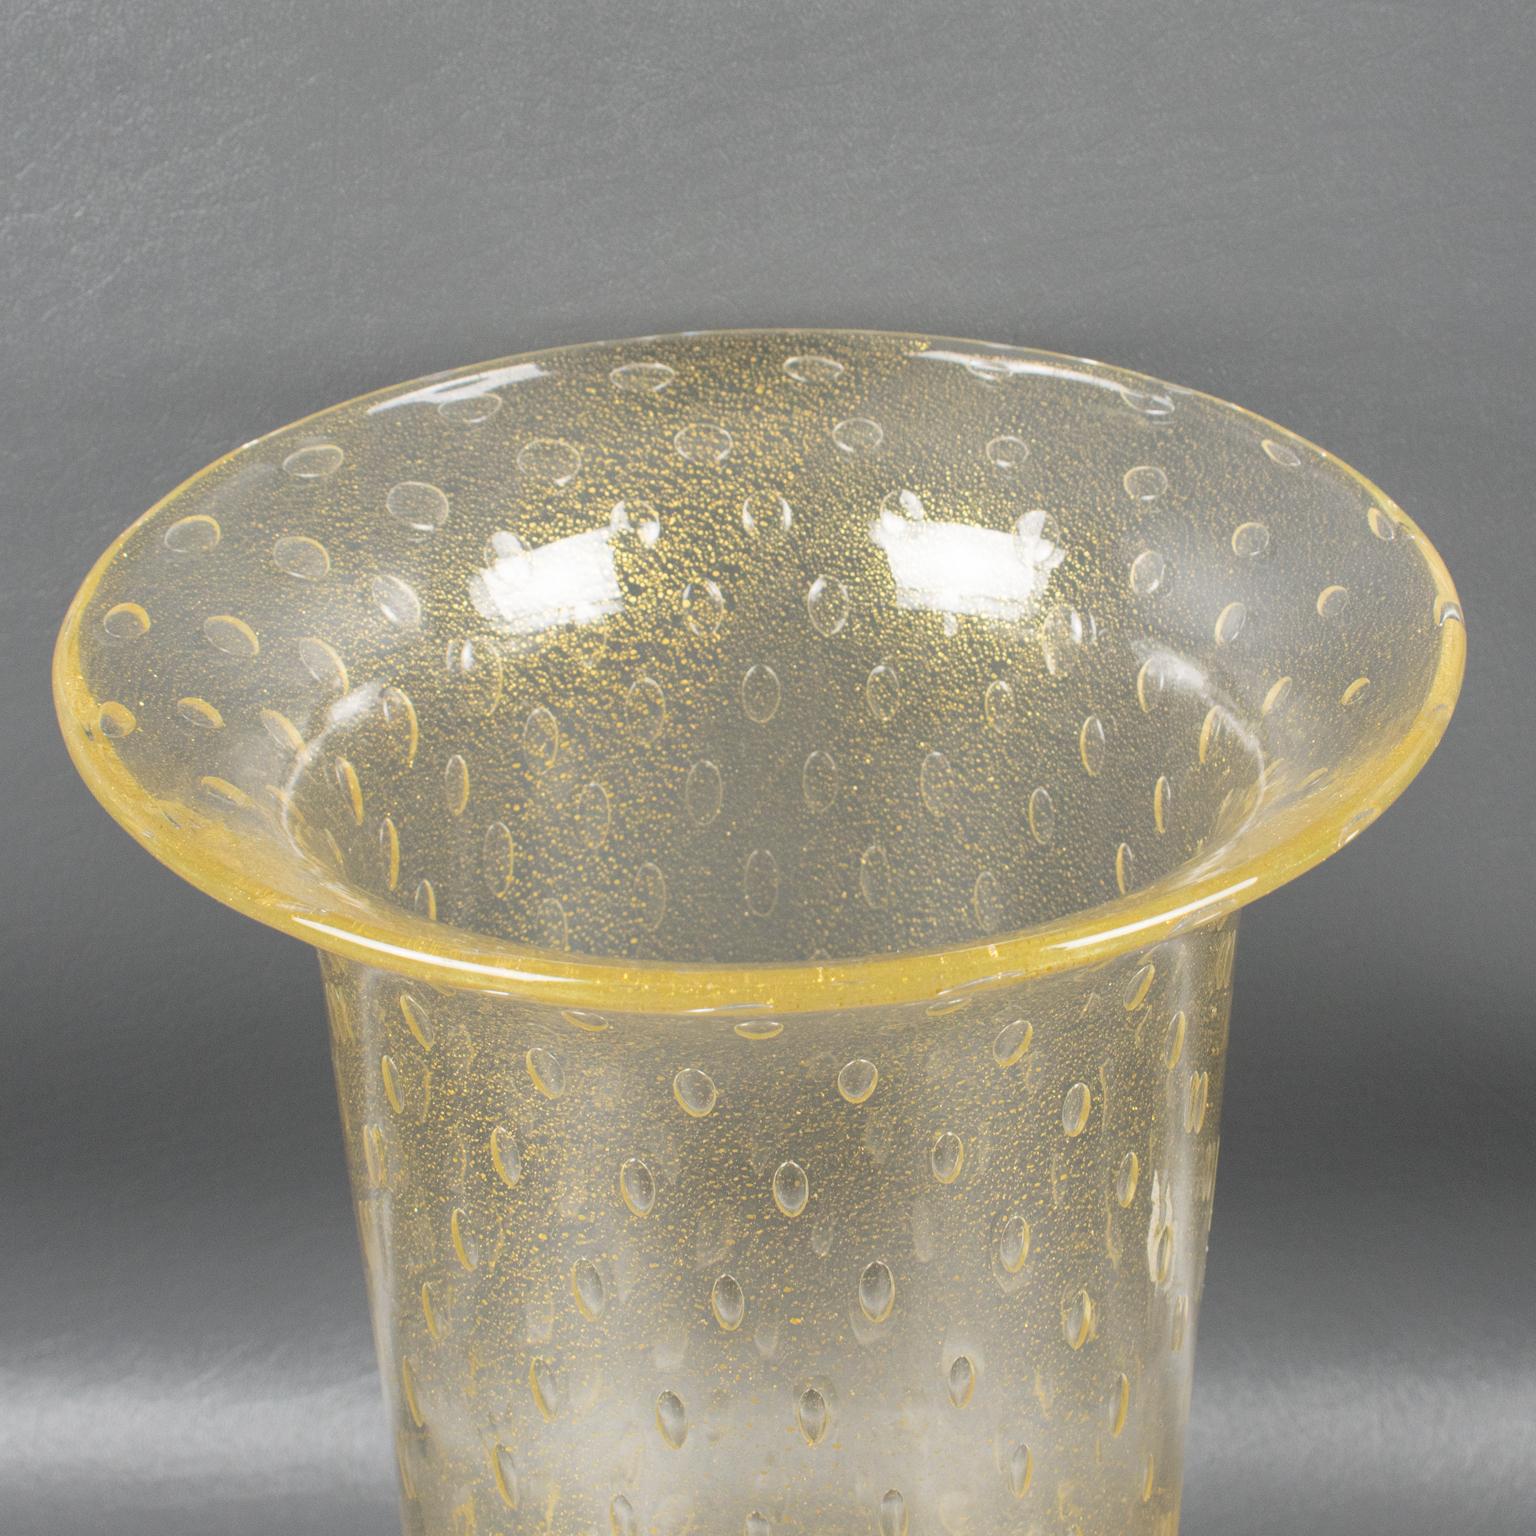 Italian Art Glass Murano Vase Gold Flakes and Bubbles by Gambaro & Poggi For Sale 4